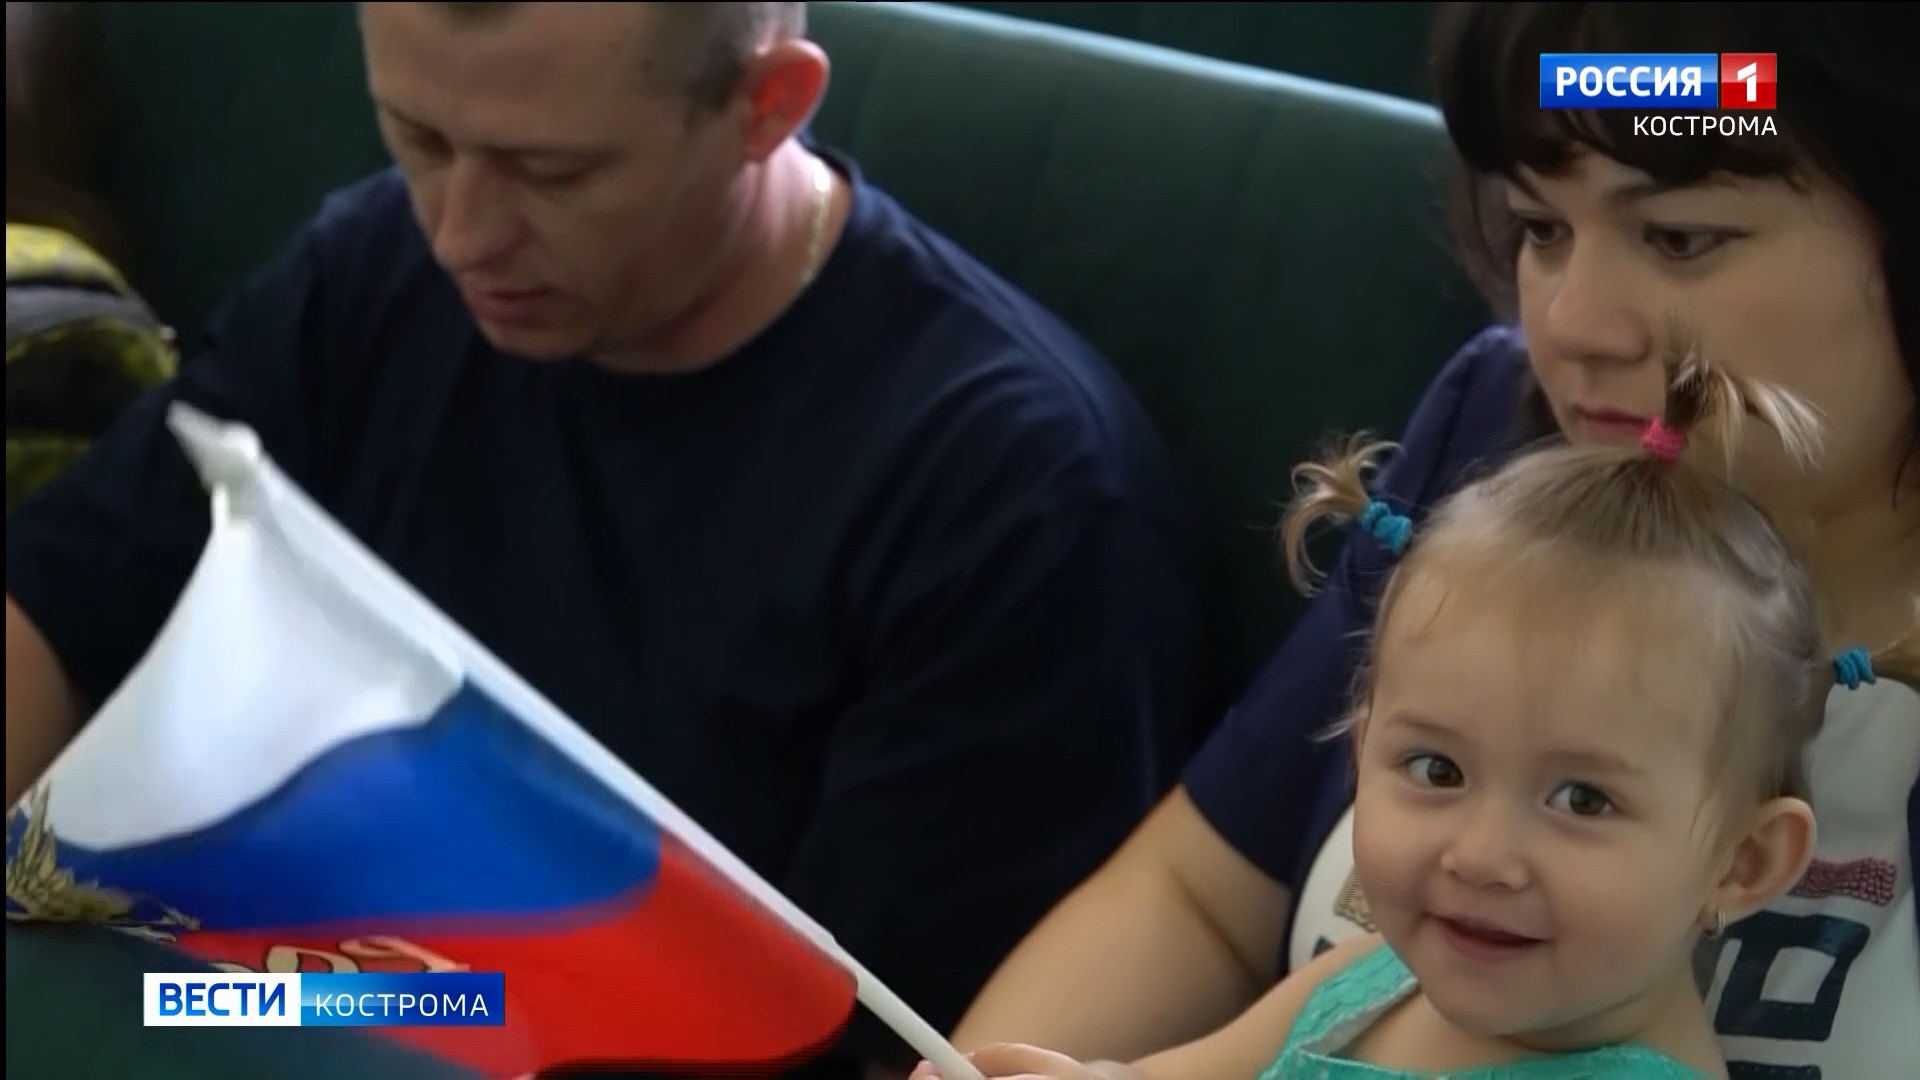 11 беженцев с Украины в Костроме дали клятву верности России